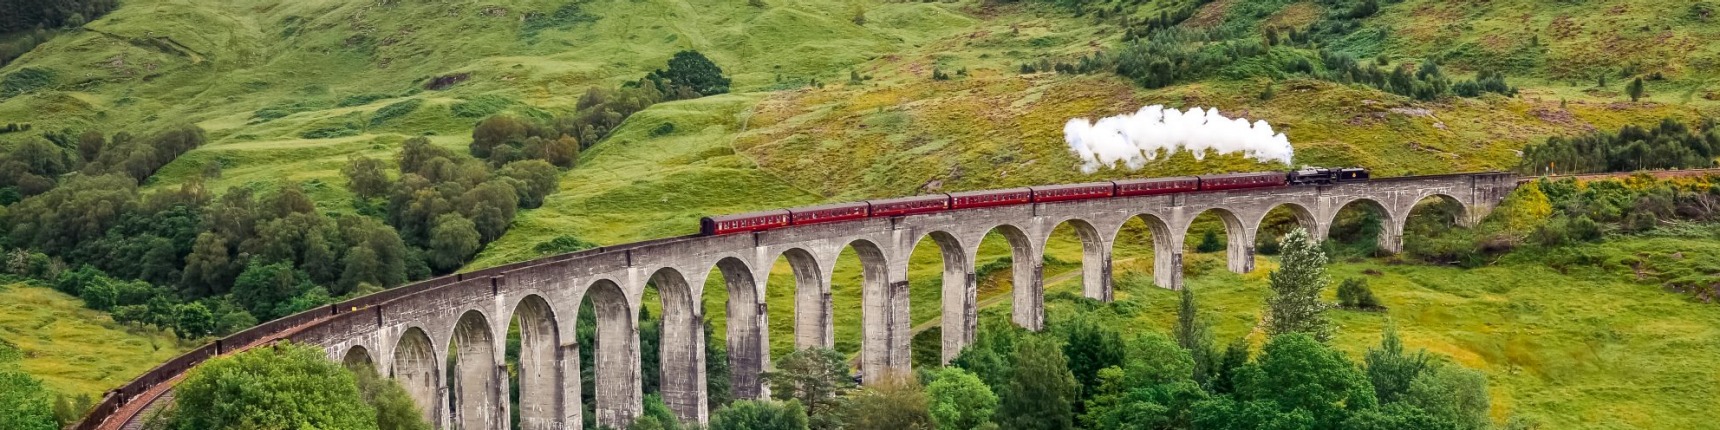 Scotland train